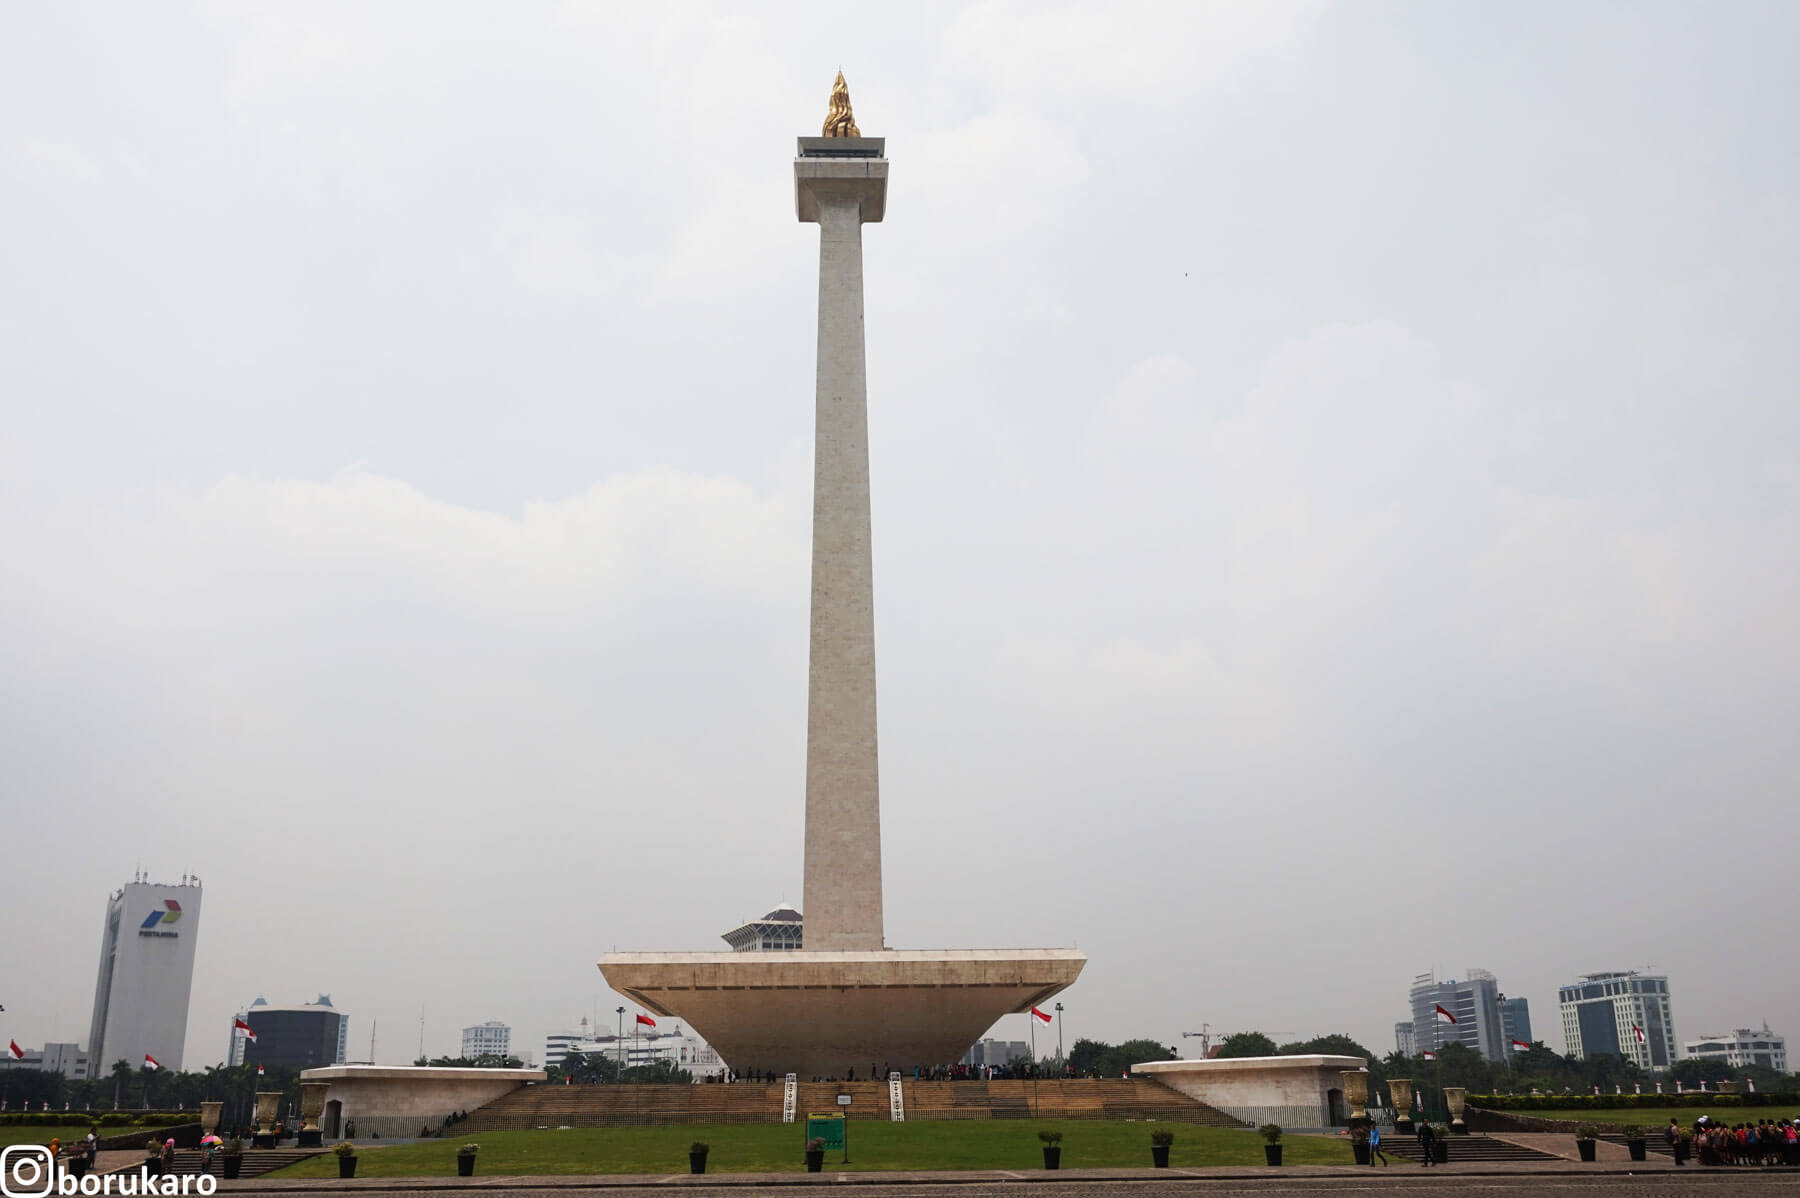 Yuk…berwisata murah ke Puncak Monas Jakarta.